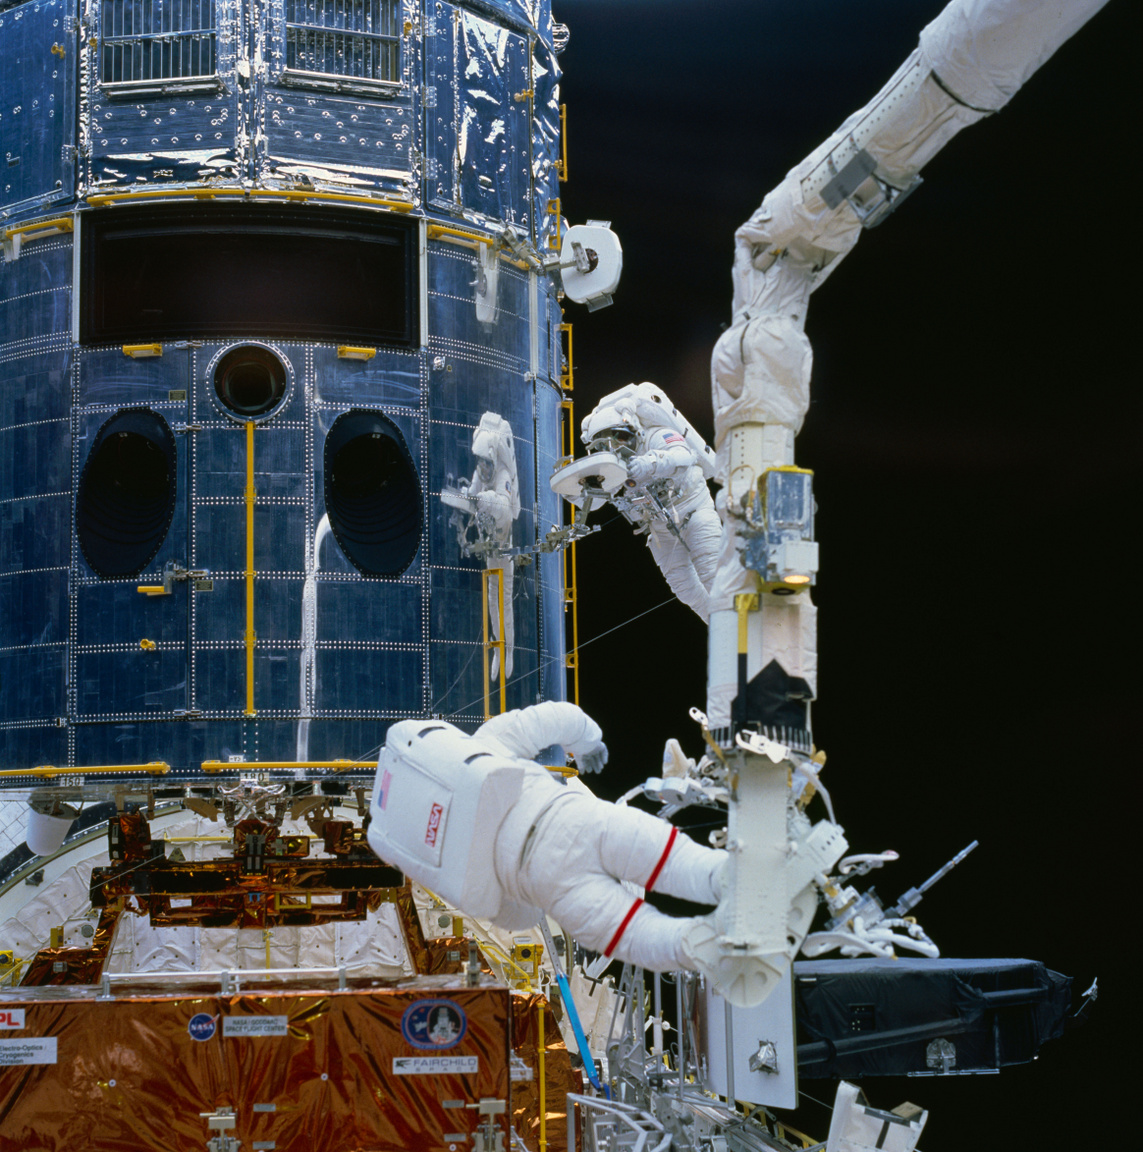 1993. december 5-i fotó az első nagyjavítás egyik igen látványos pillanatáról. A fotón fölül F. Story Musgrave űrhajós, alatta Jeffrey A. Hoffman látható, a fényképen jól megfigyelhetőek a Hubble irányhajtóművei, de Musgrave tükörképe a Hubble burkolatán is figyelemreméltó.